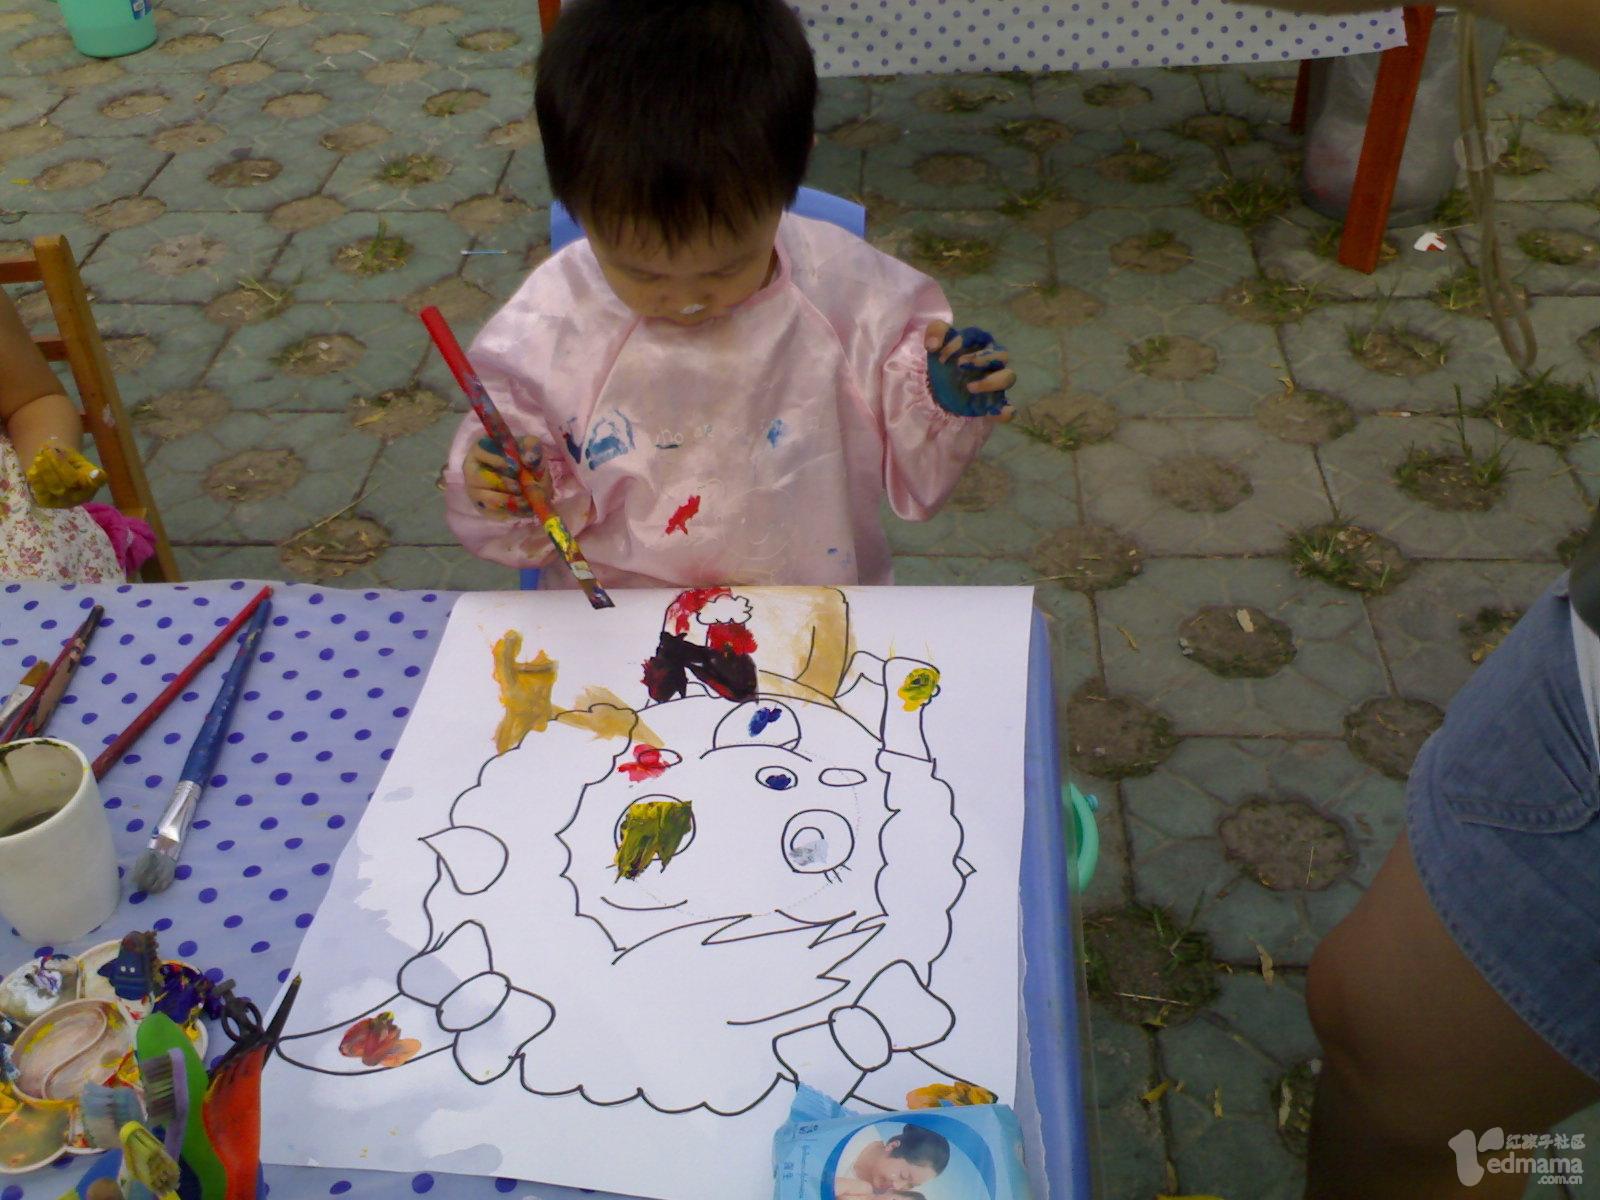 3岁的豆豆给美羊羊涂色，每个宝宝都有一张图画，颜料盘，笔和水杯，将自己与所涂鸦的作品拍照。豆豆戏称：“我把美羊羊给涂成了灰太狼!”。